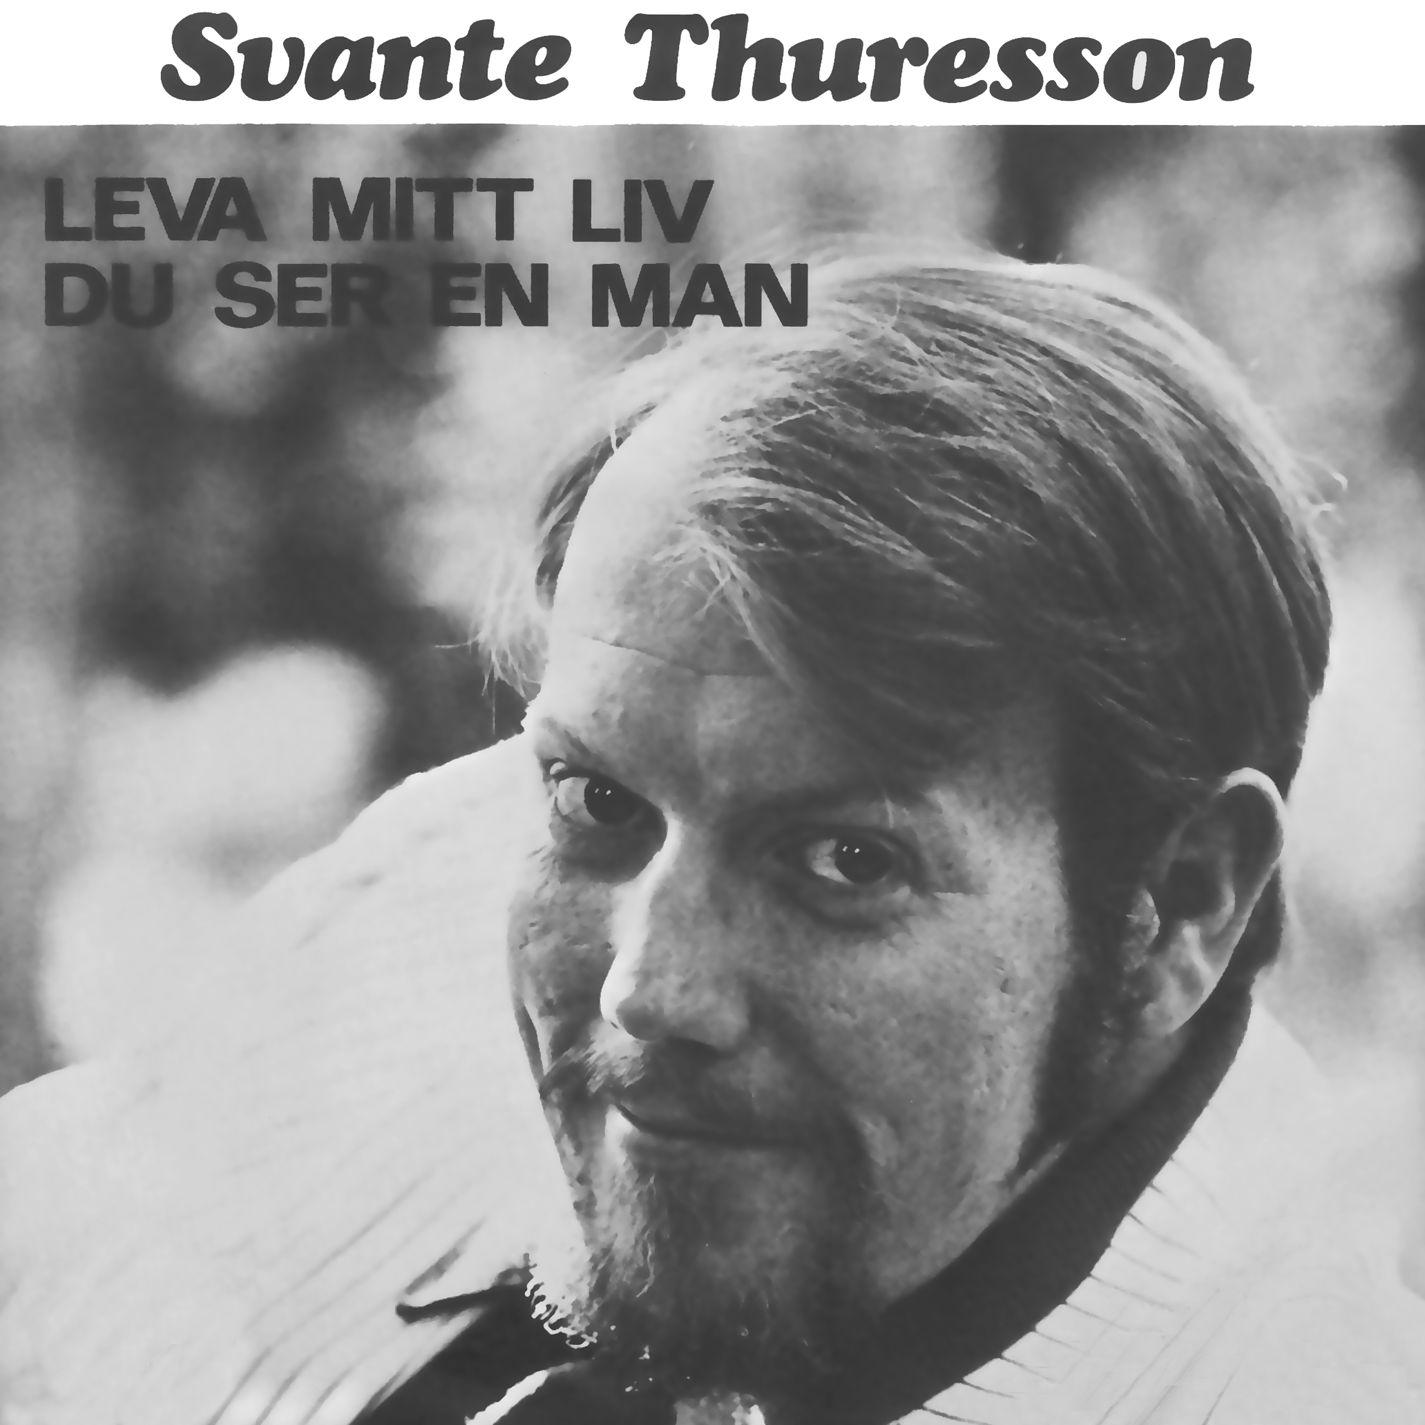 Svante Thuresson - Leva mitt liv